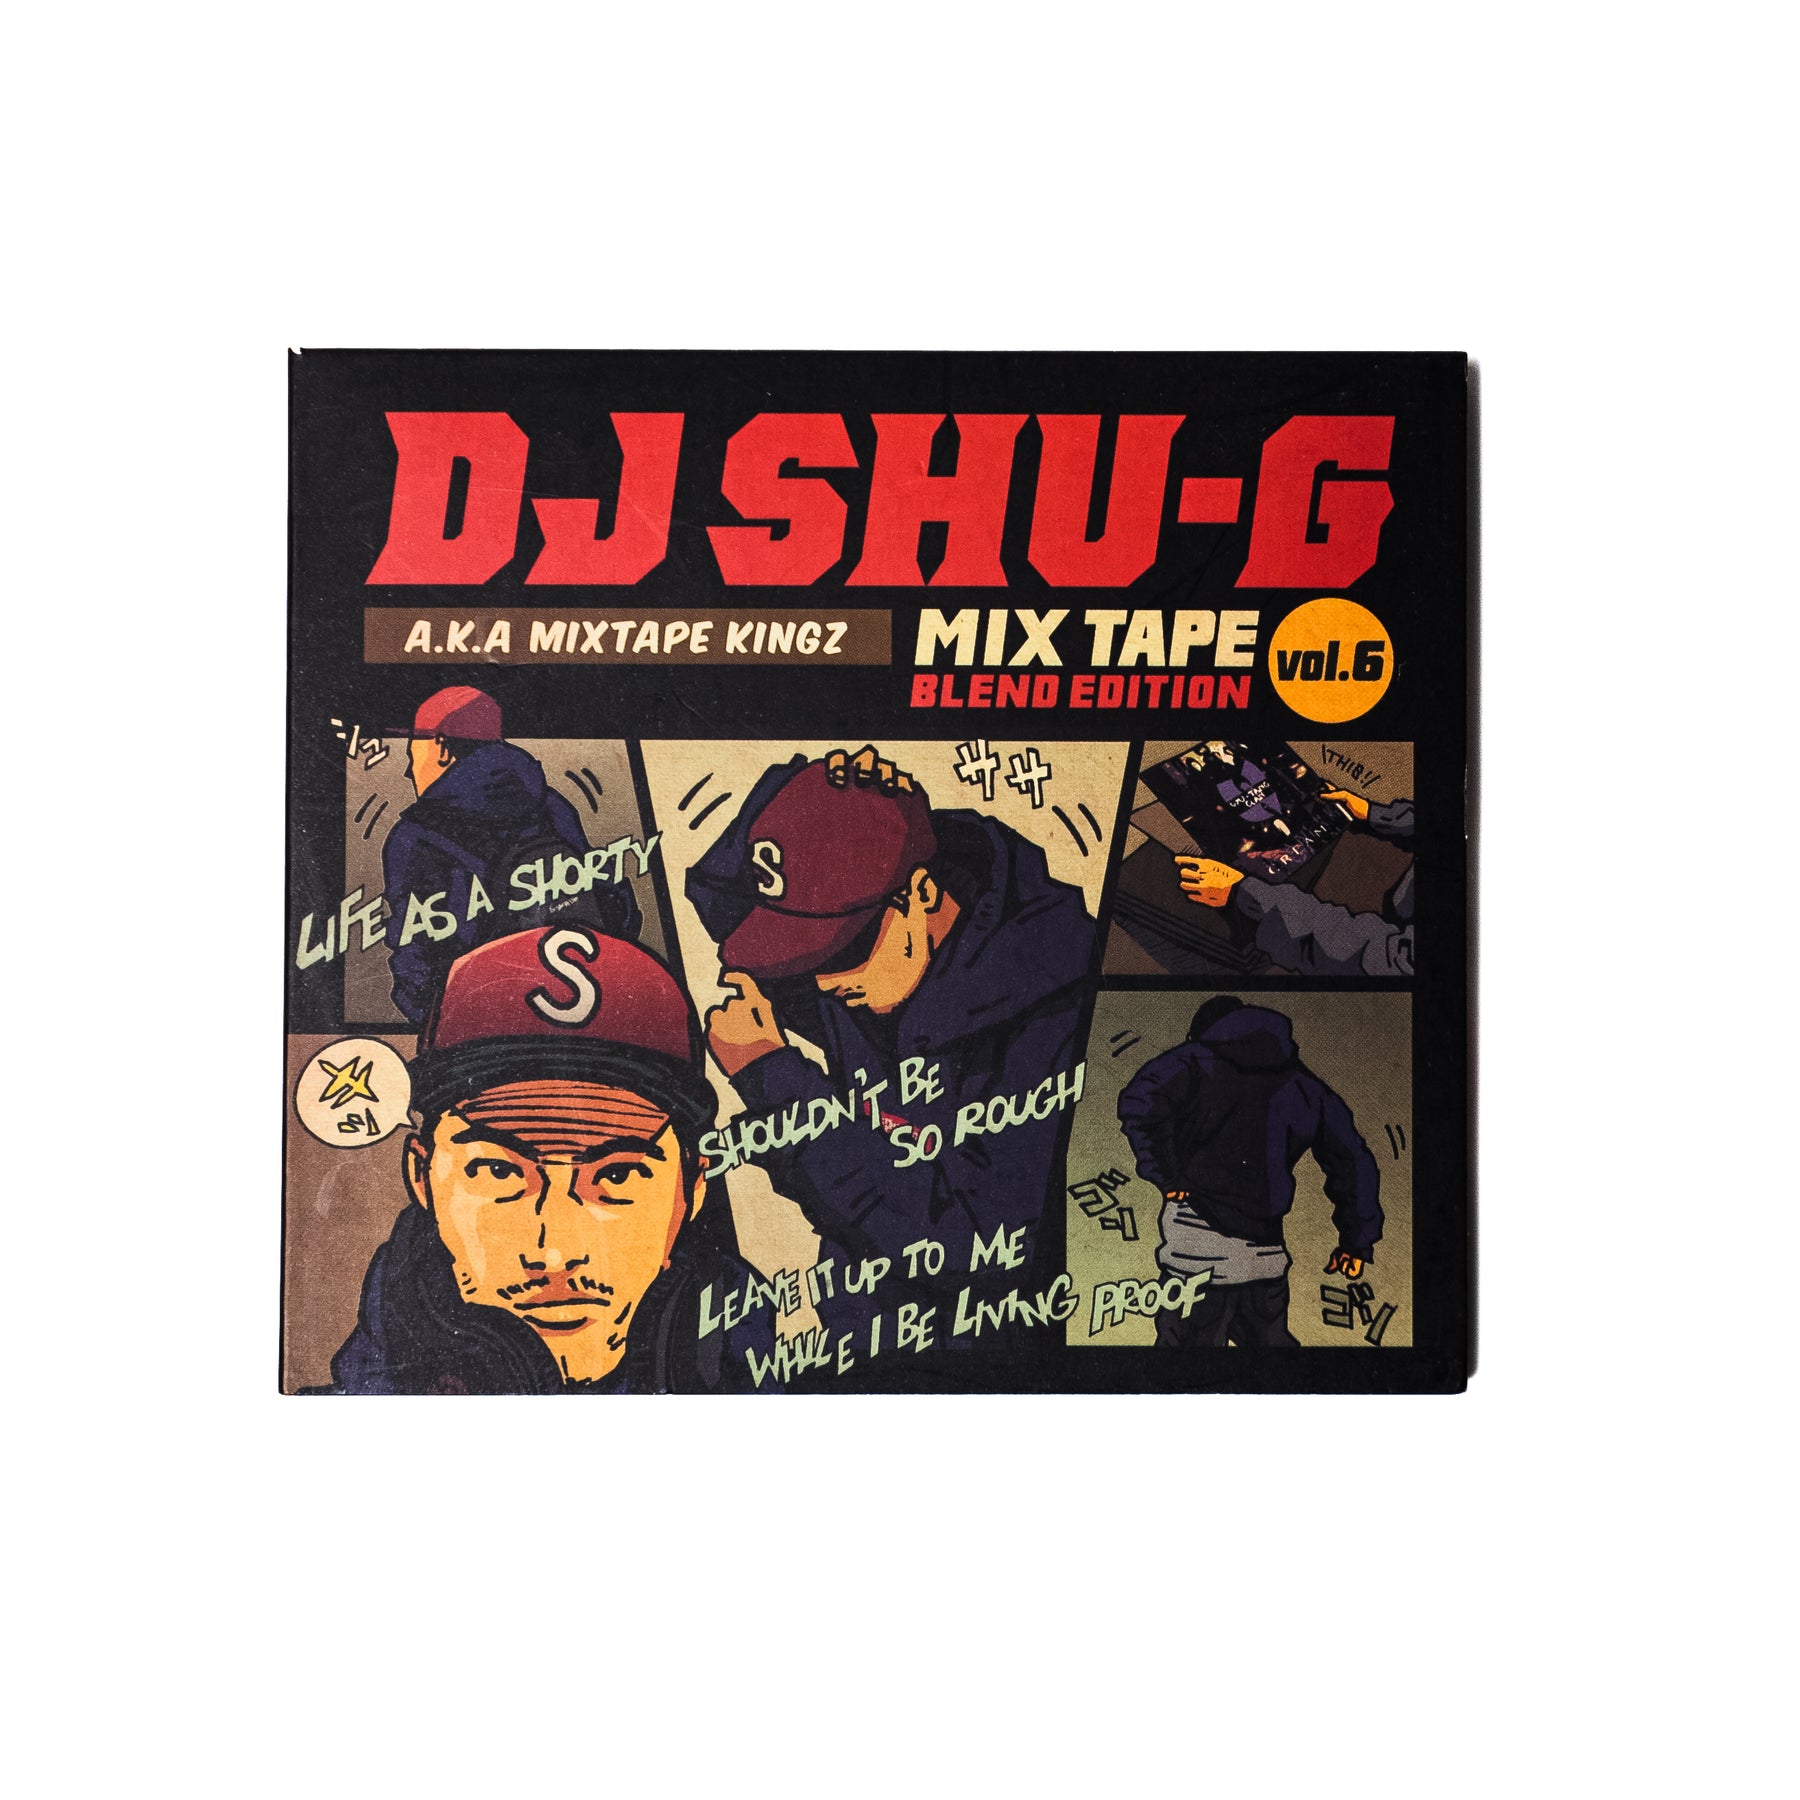 90's Hip Hop Classic & Mash Up Mix "MIXTAPE vol.6"